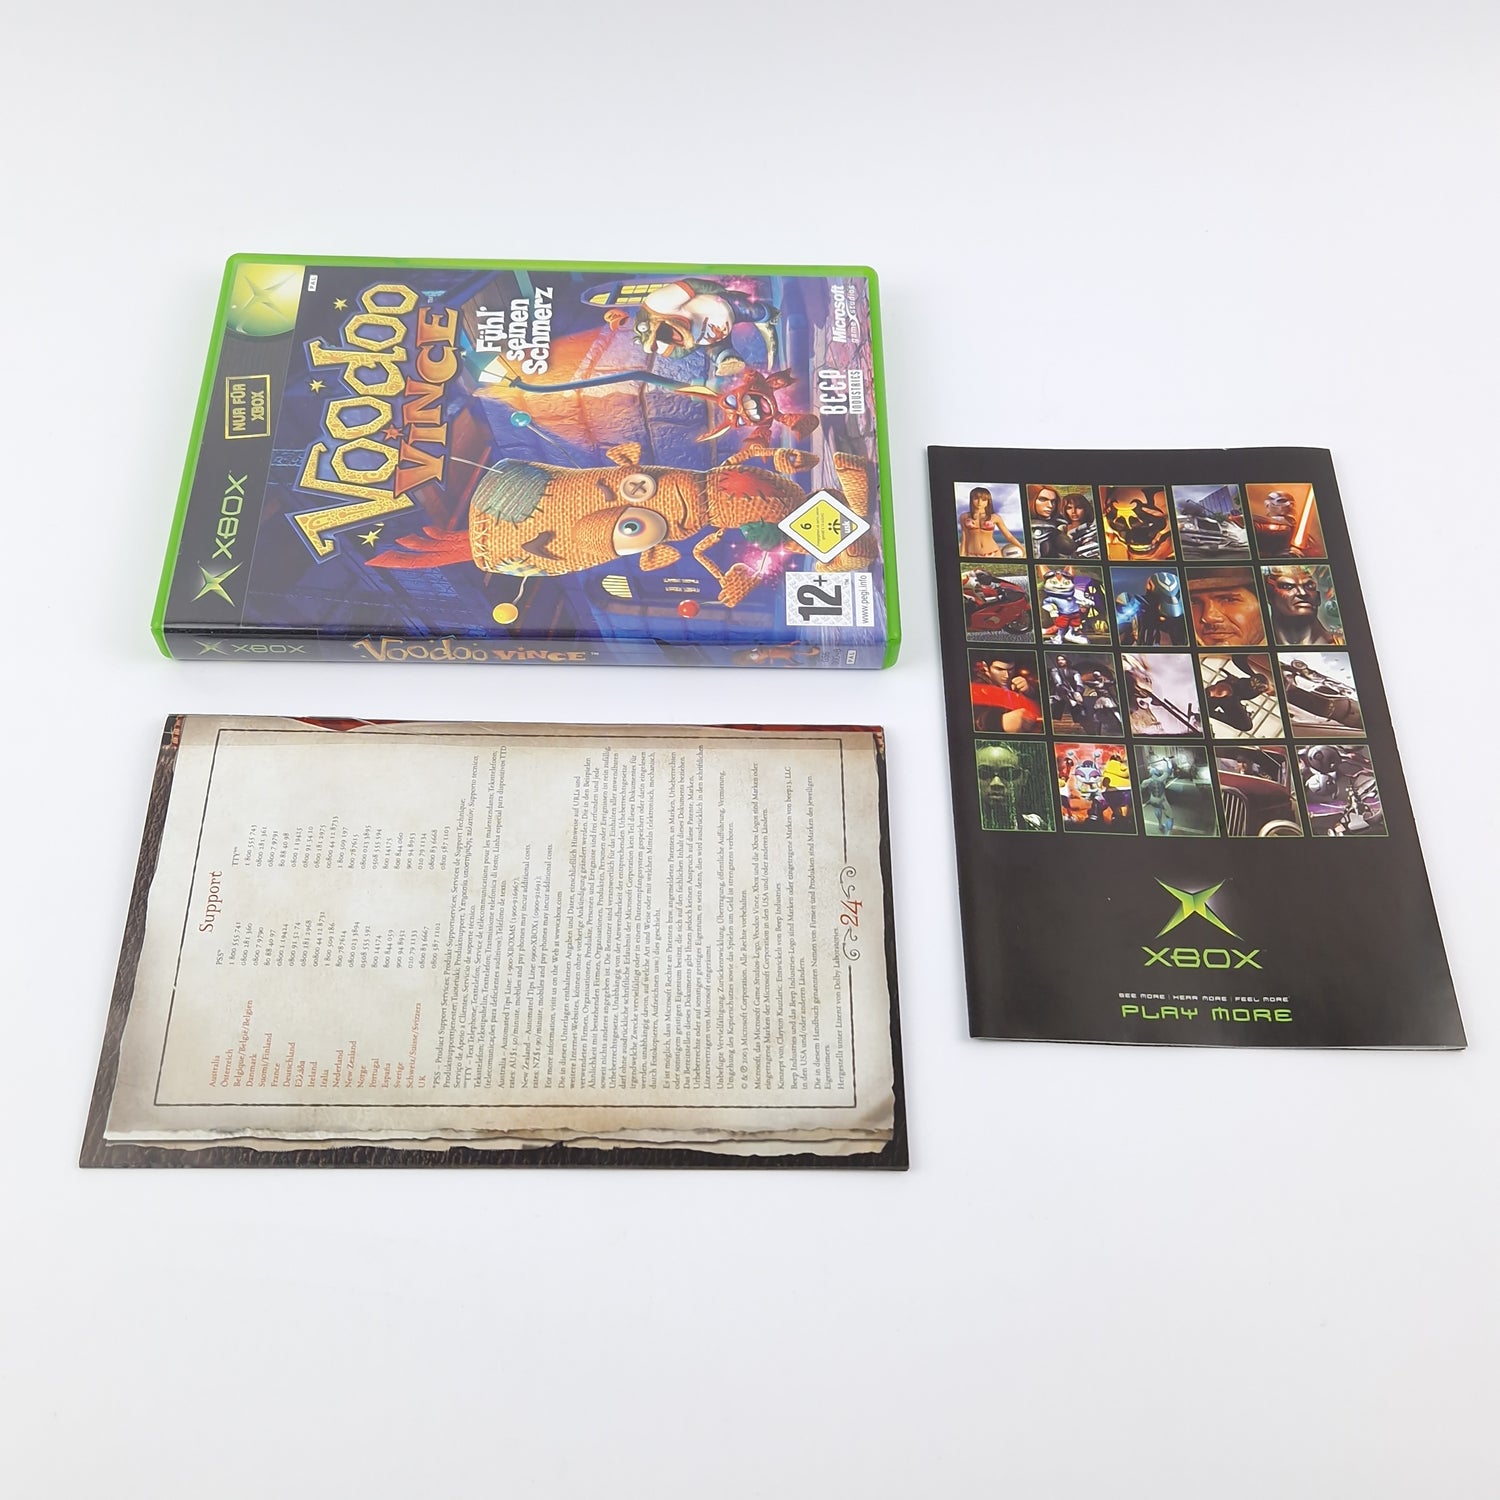 Microsoft Xbox Classic Spiel : Voodoo Vince Fühl seinen Schmerz - OVP CD dt. PAL